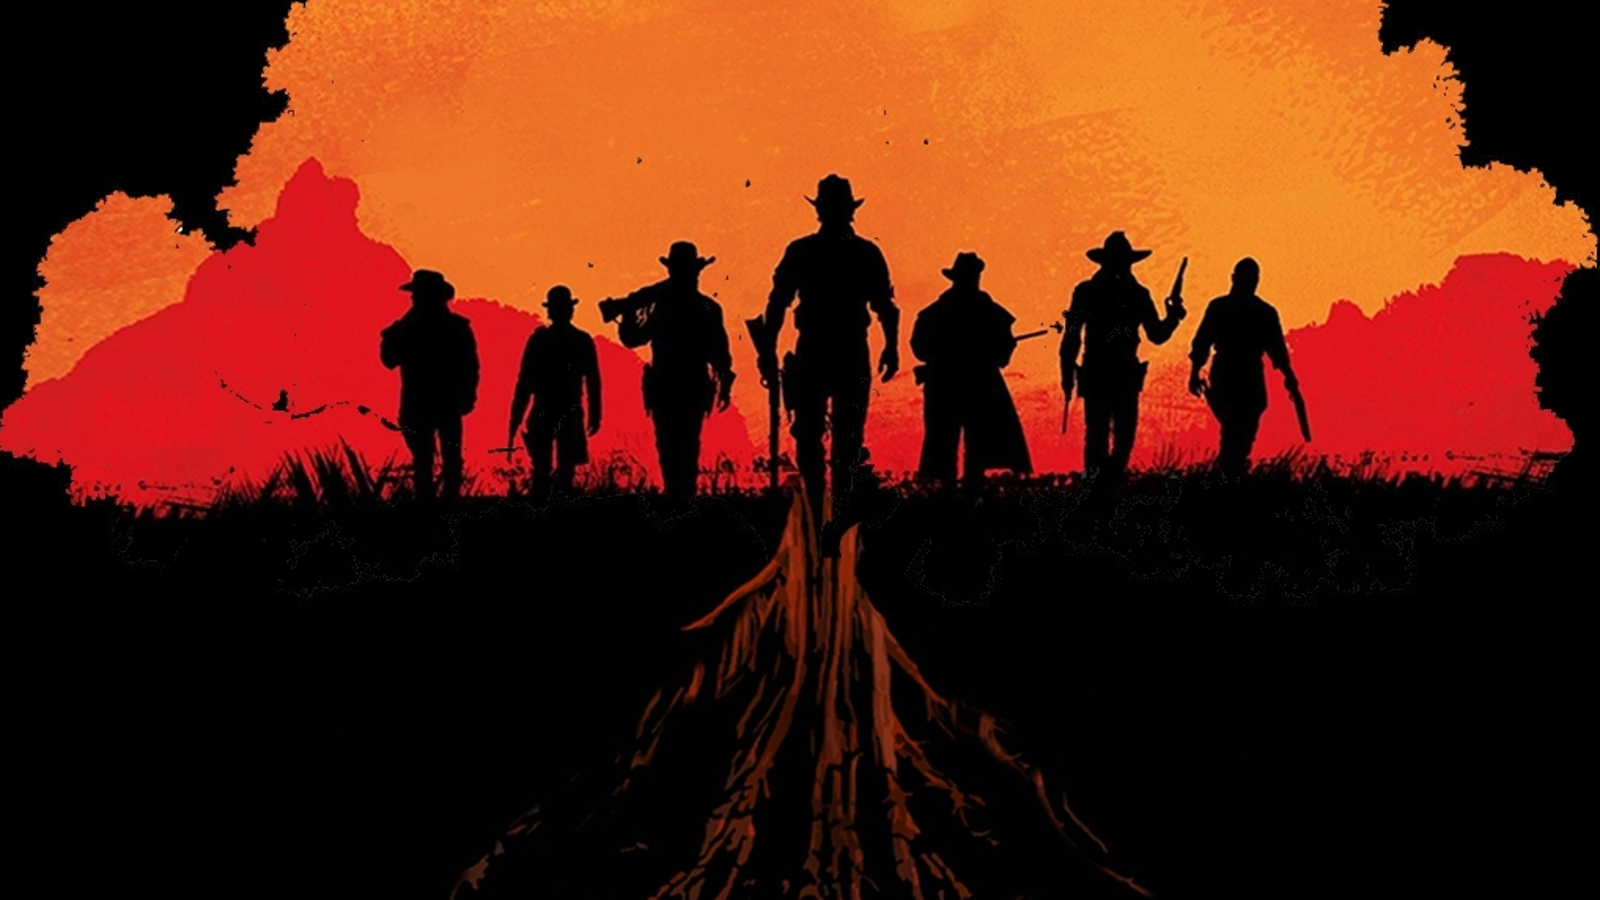 A Red Dead Redemption II le falta un importante detalle que se le